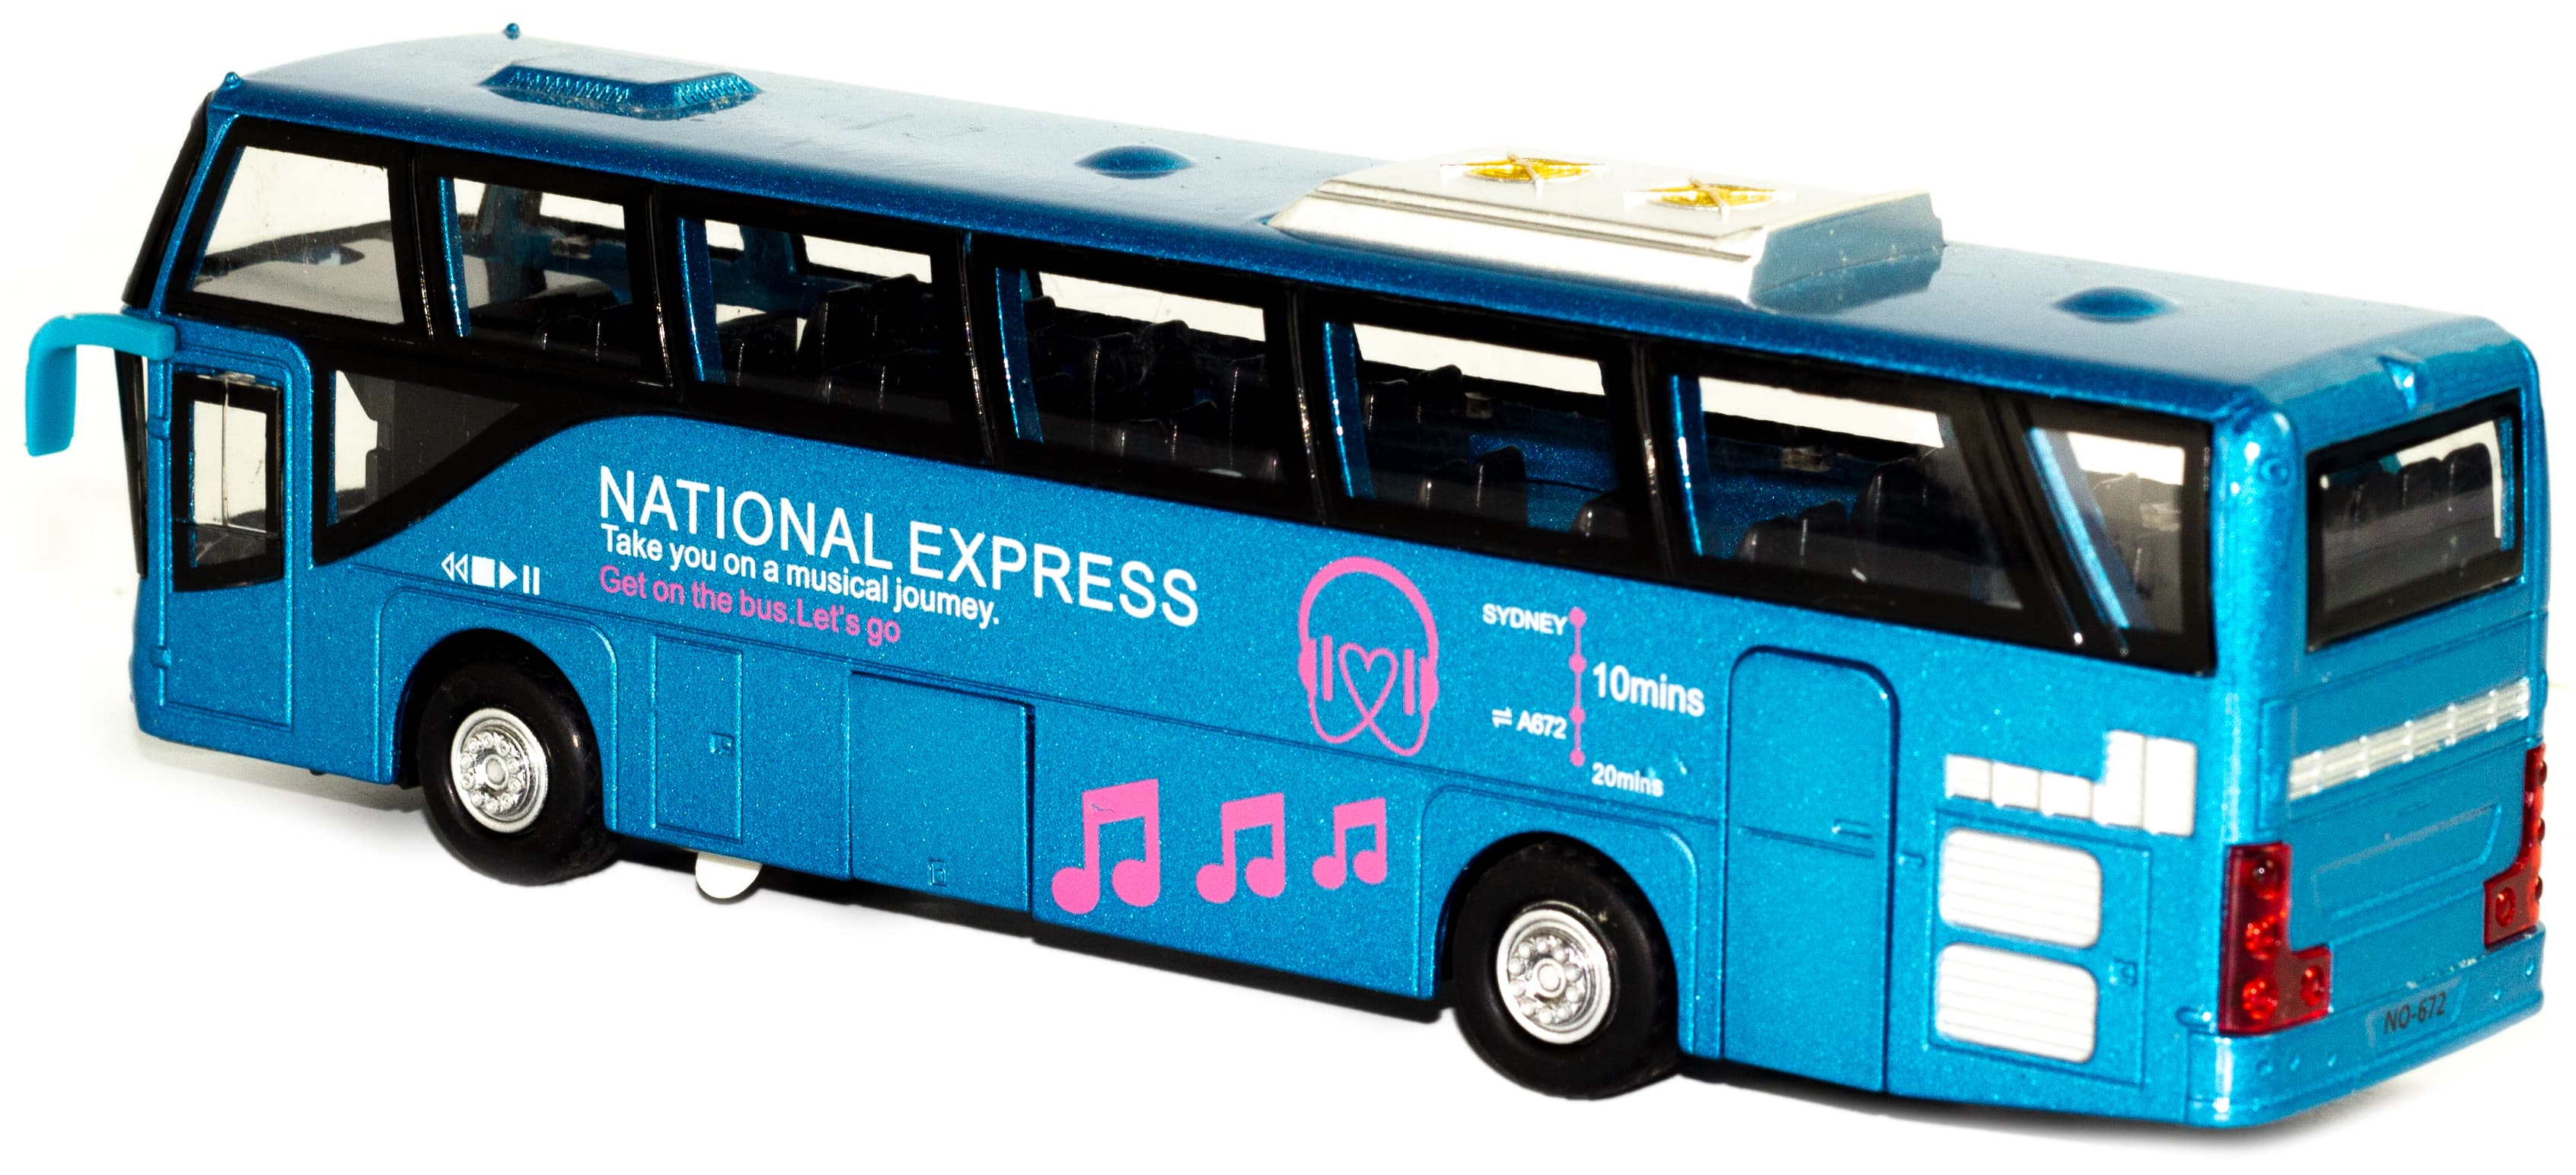 Металлический автобус Wanbao «National Express» 19.5 см. 672D, инерционный / Голубой